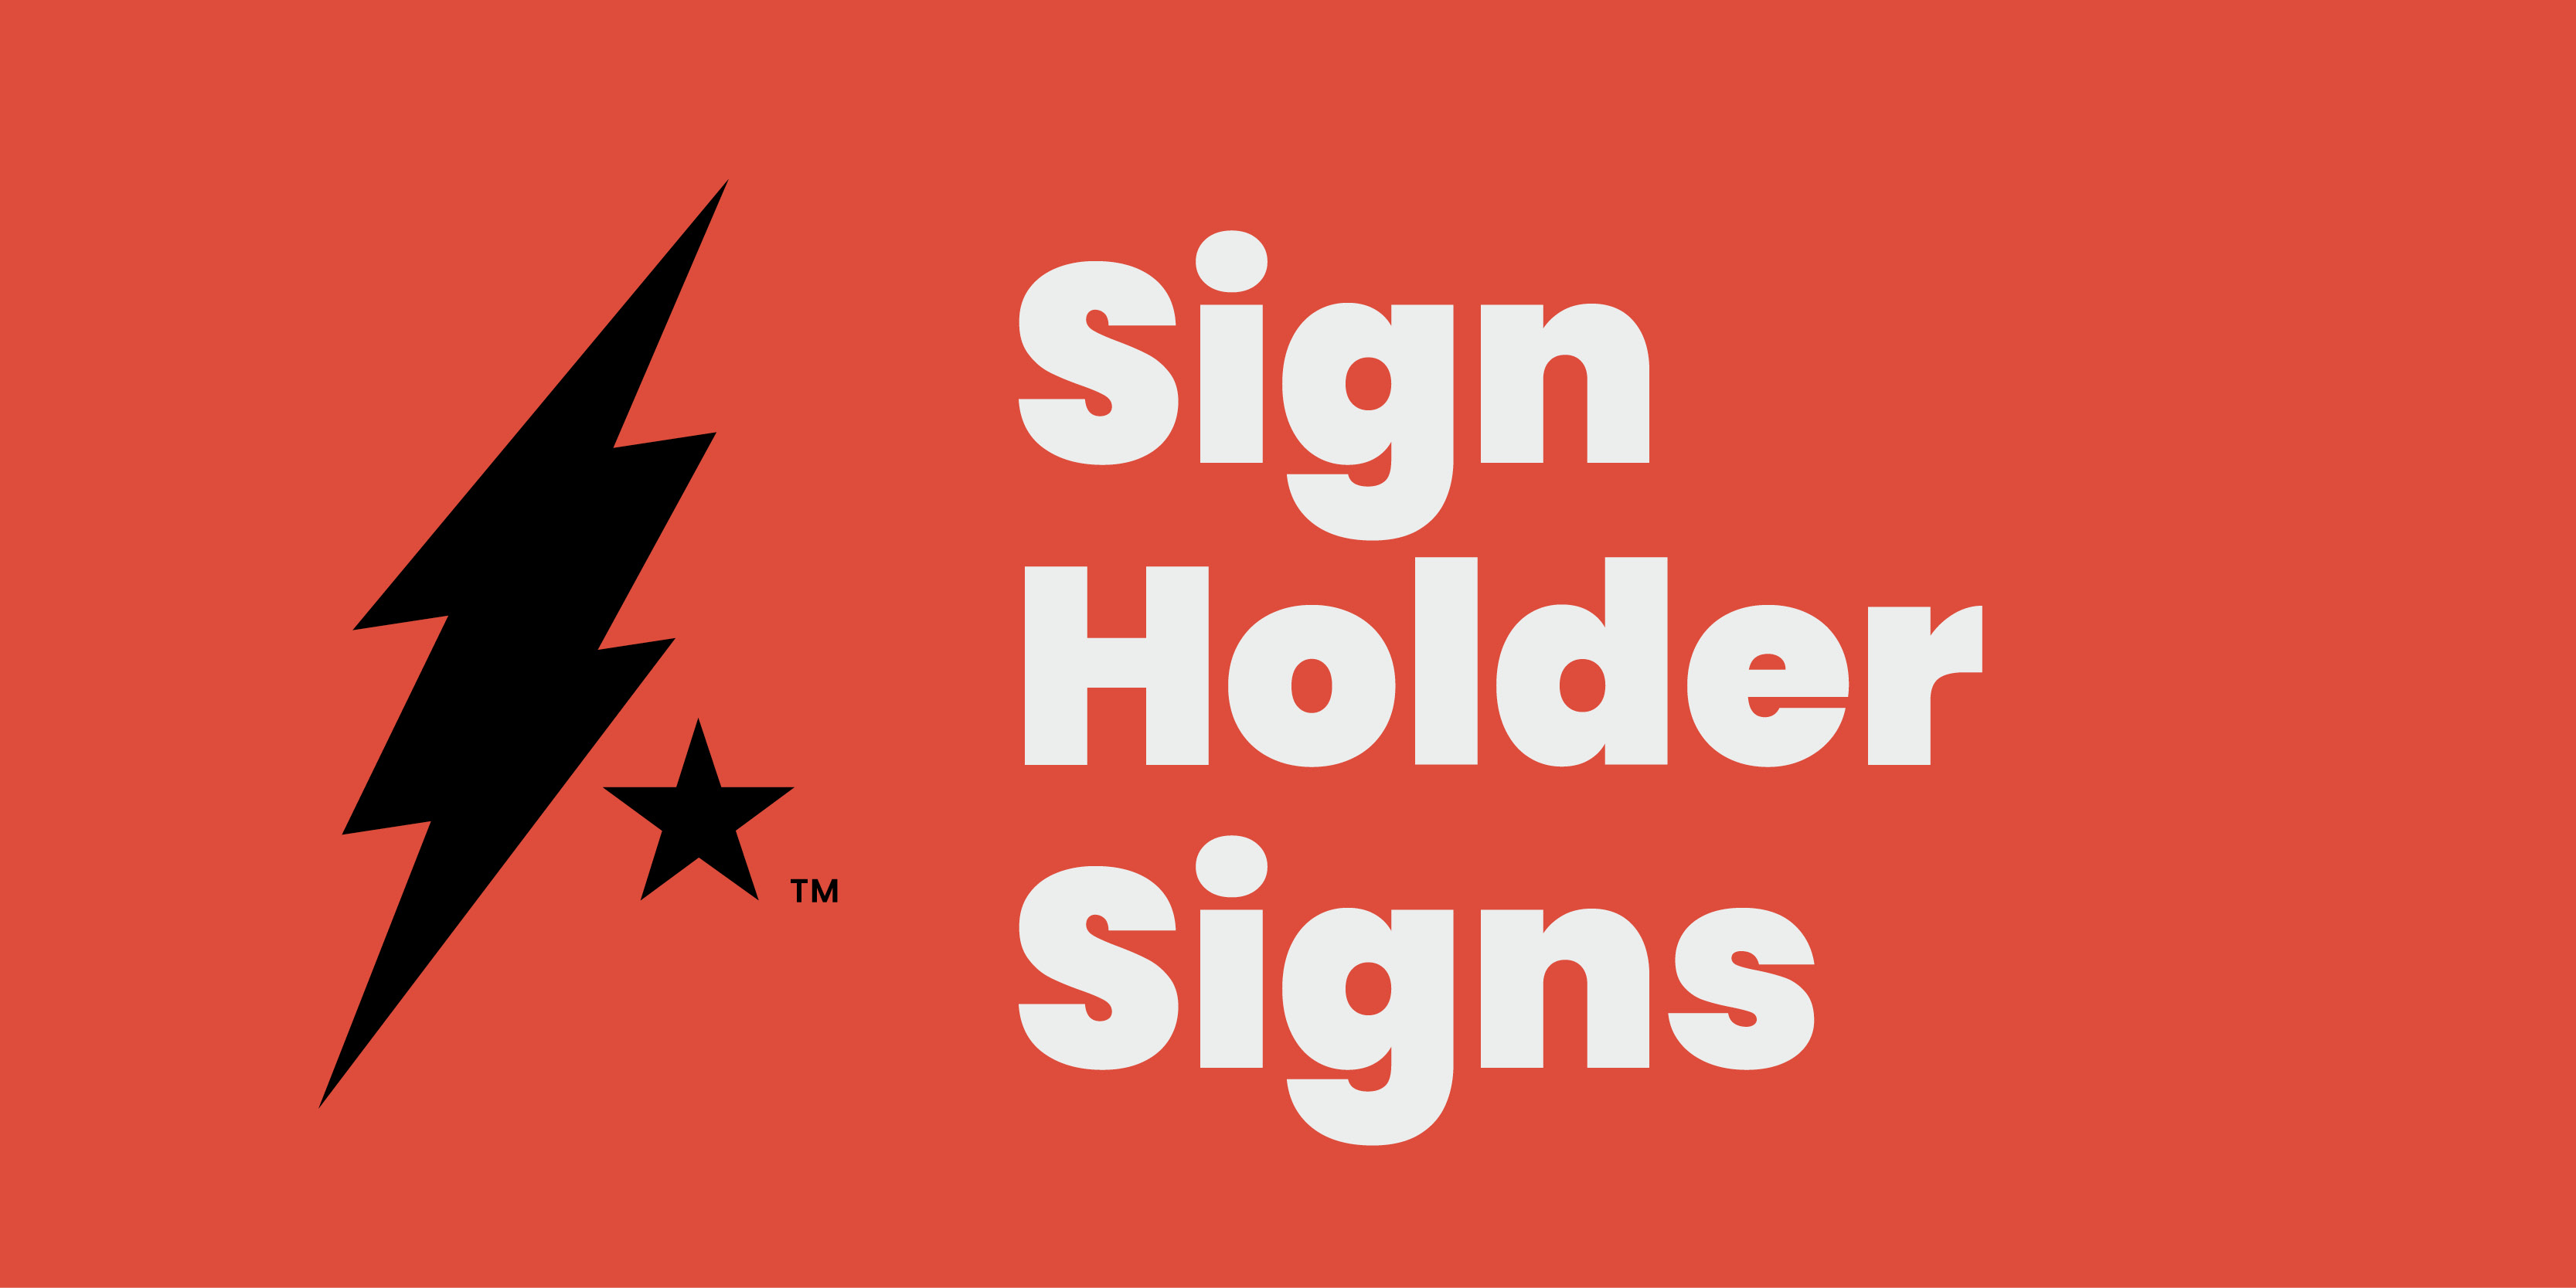 Sign Holder Signs